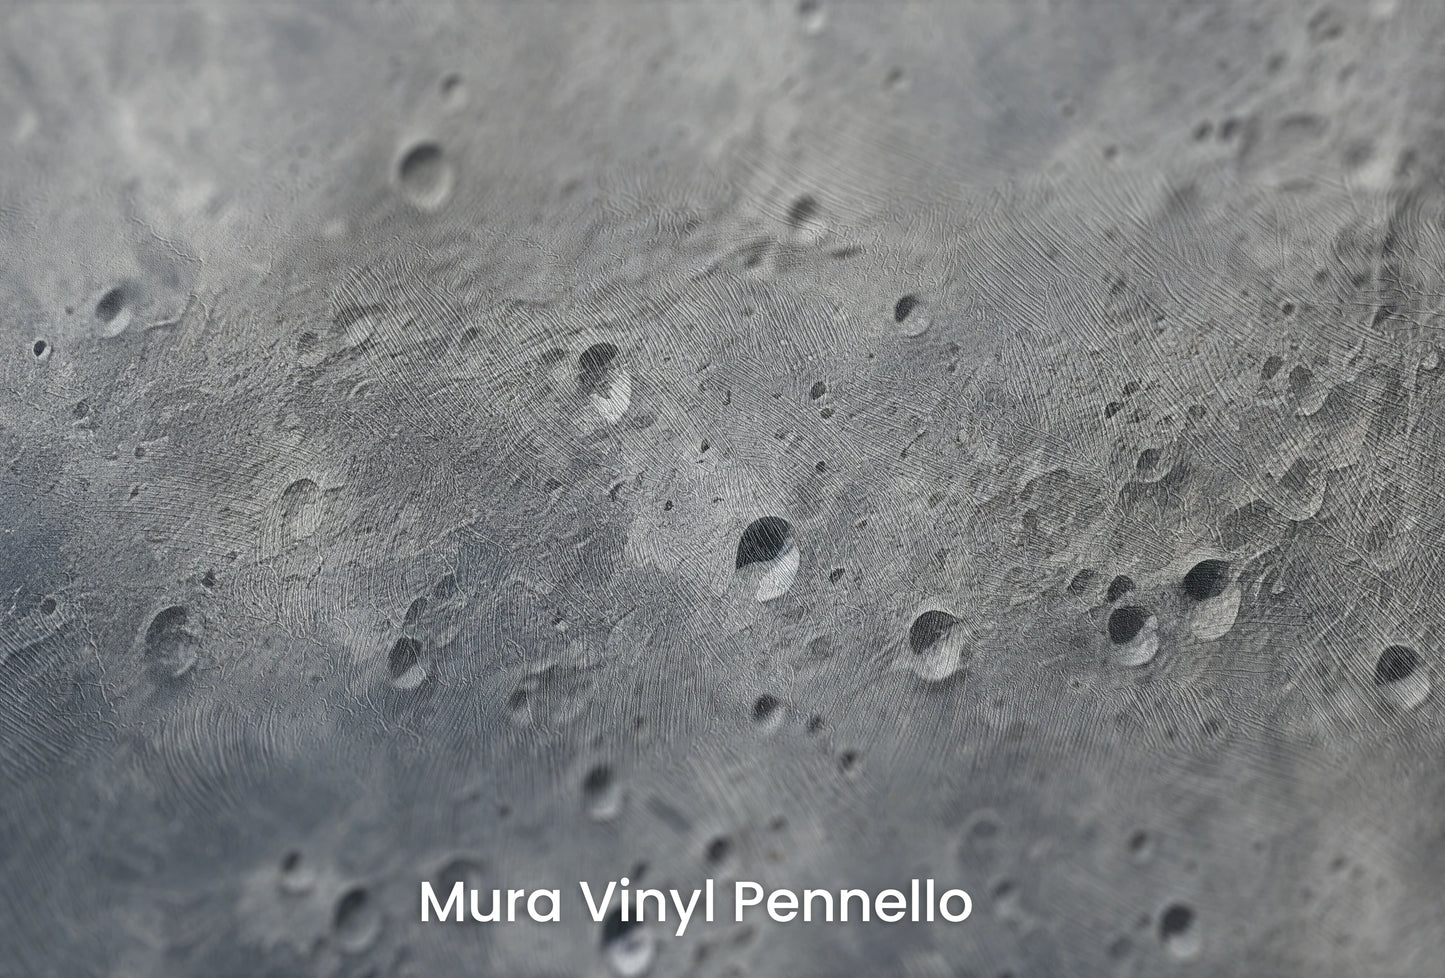 Zbliżenie na artystyczną fototapetę o nazwie Moon's Mystery na podłożu Mura Vinyl Pennello - faktura pociągnięć pędzla malarskiego.